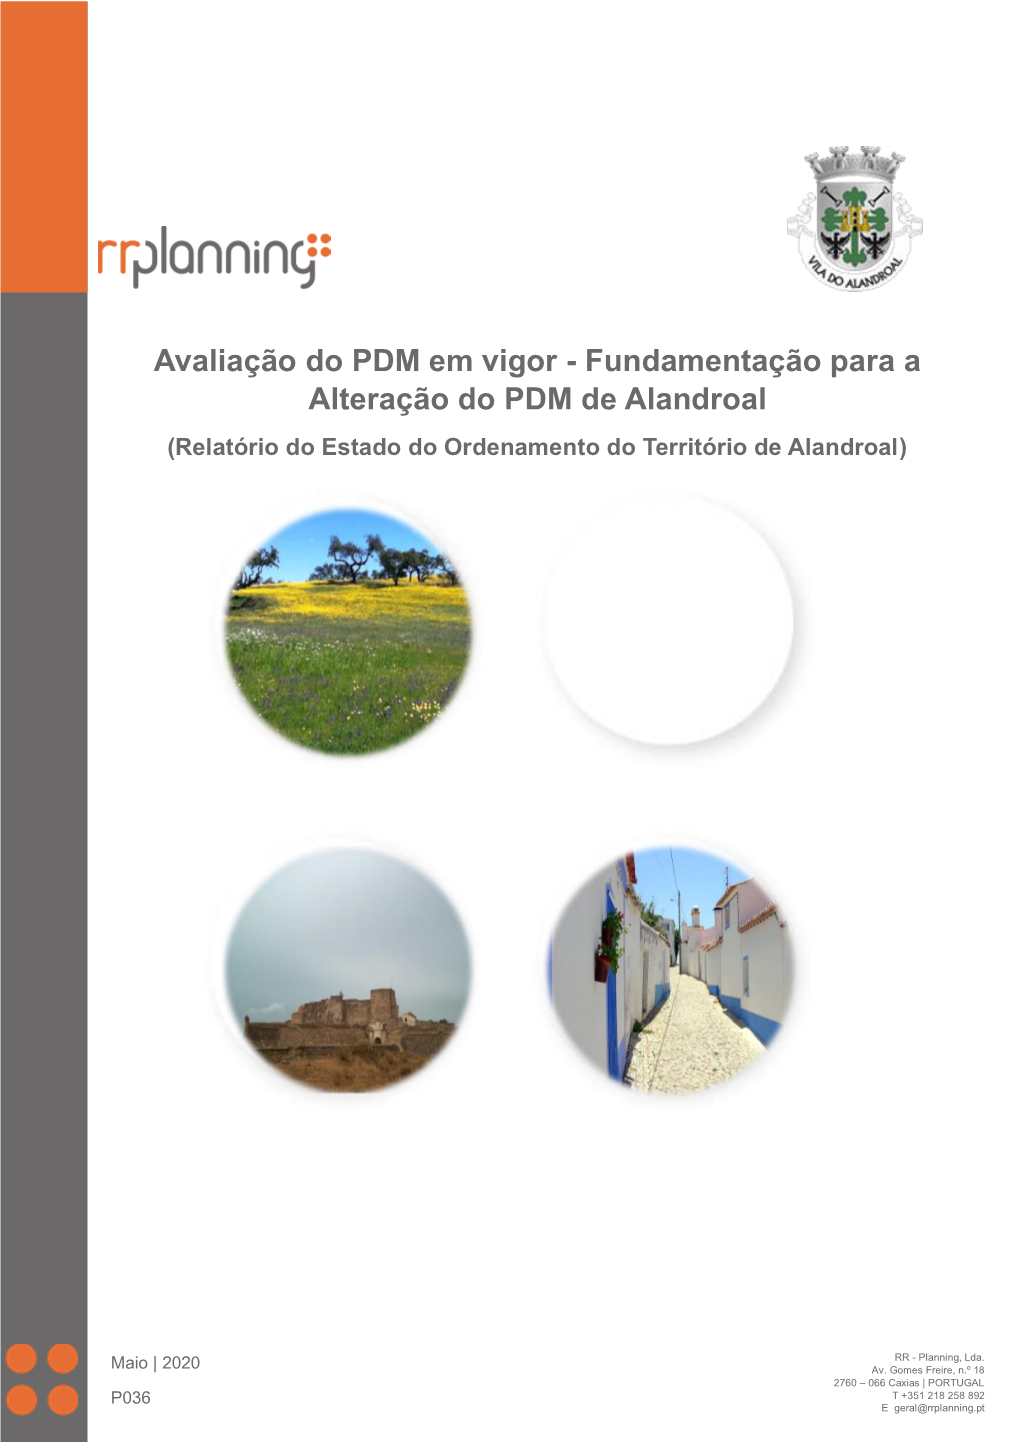 Avaliação Do PDM Em Vigor - Fundamentação Para a Alteração Do PDM De Alandroal (Relatório Do Estado Do Ordenamento Do Território De Alandroal)